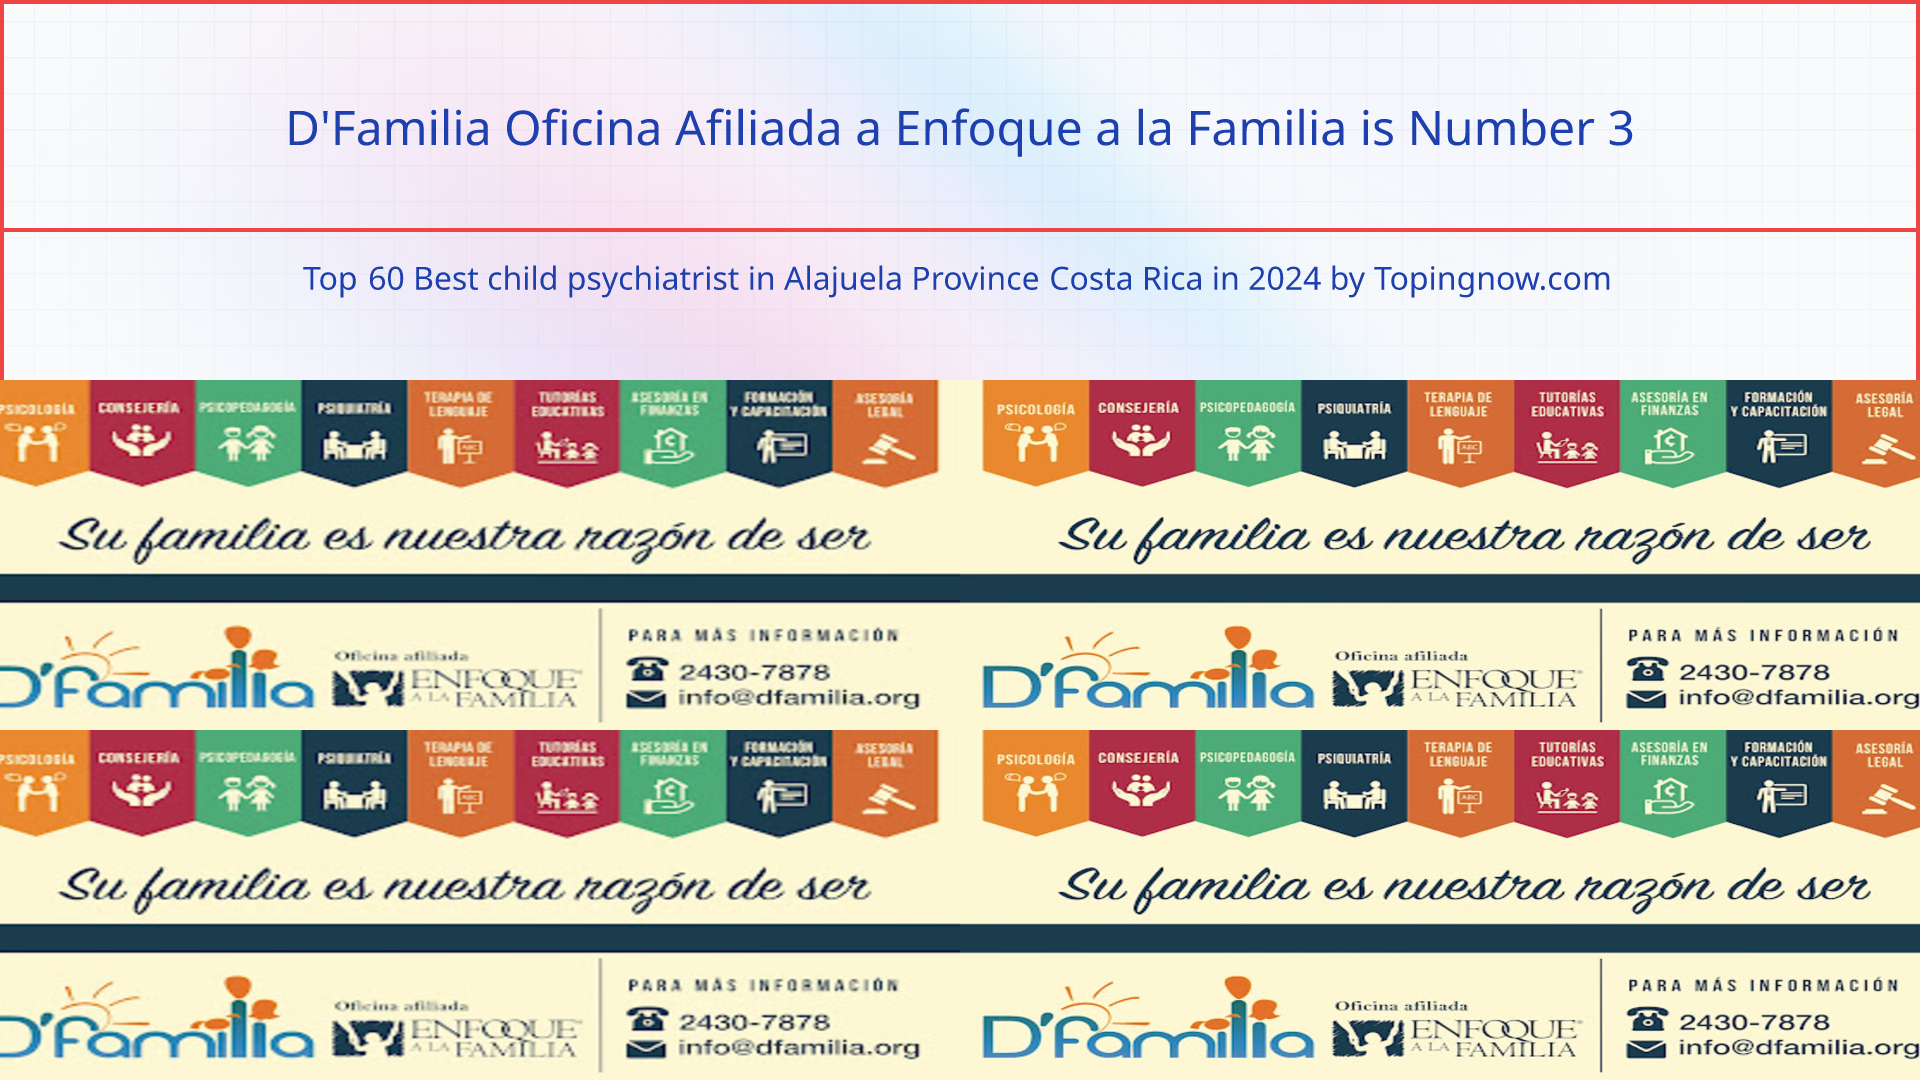 D'Familia Oficina Afiliada a Enfoque a la Familia: Top 60 Best child psychiatrist in Alajuela Province Costa Rica in 2024